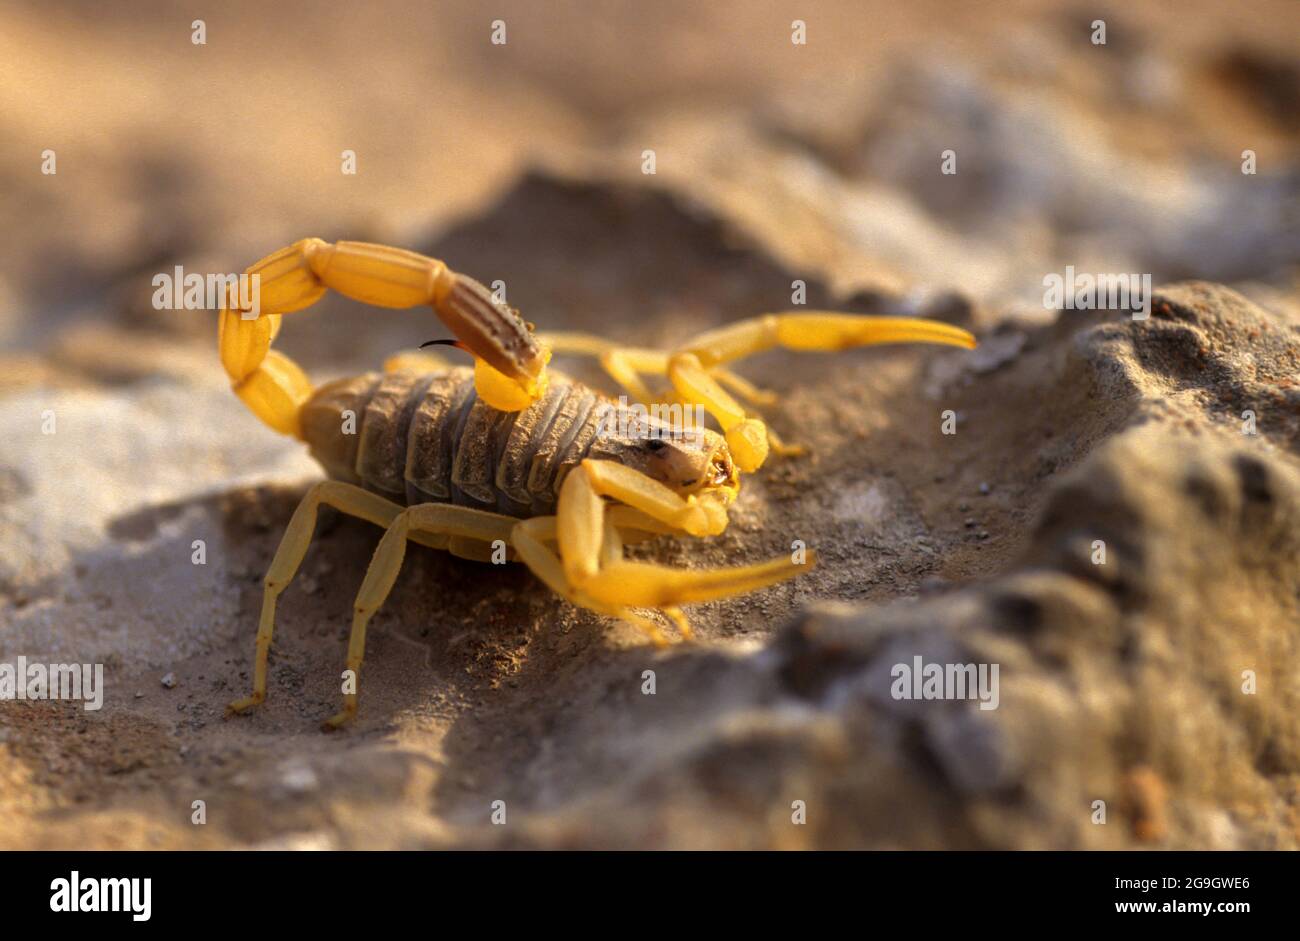 Leiurus hebraeus, le déathstaleur hébraïque, est une espèce de scorpion, membre de la famille des Buthidae. Il est également connu sous le nom de scorpion jaune israélien. Banque D'Images